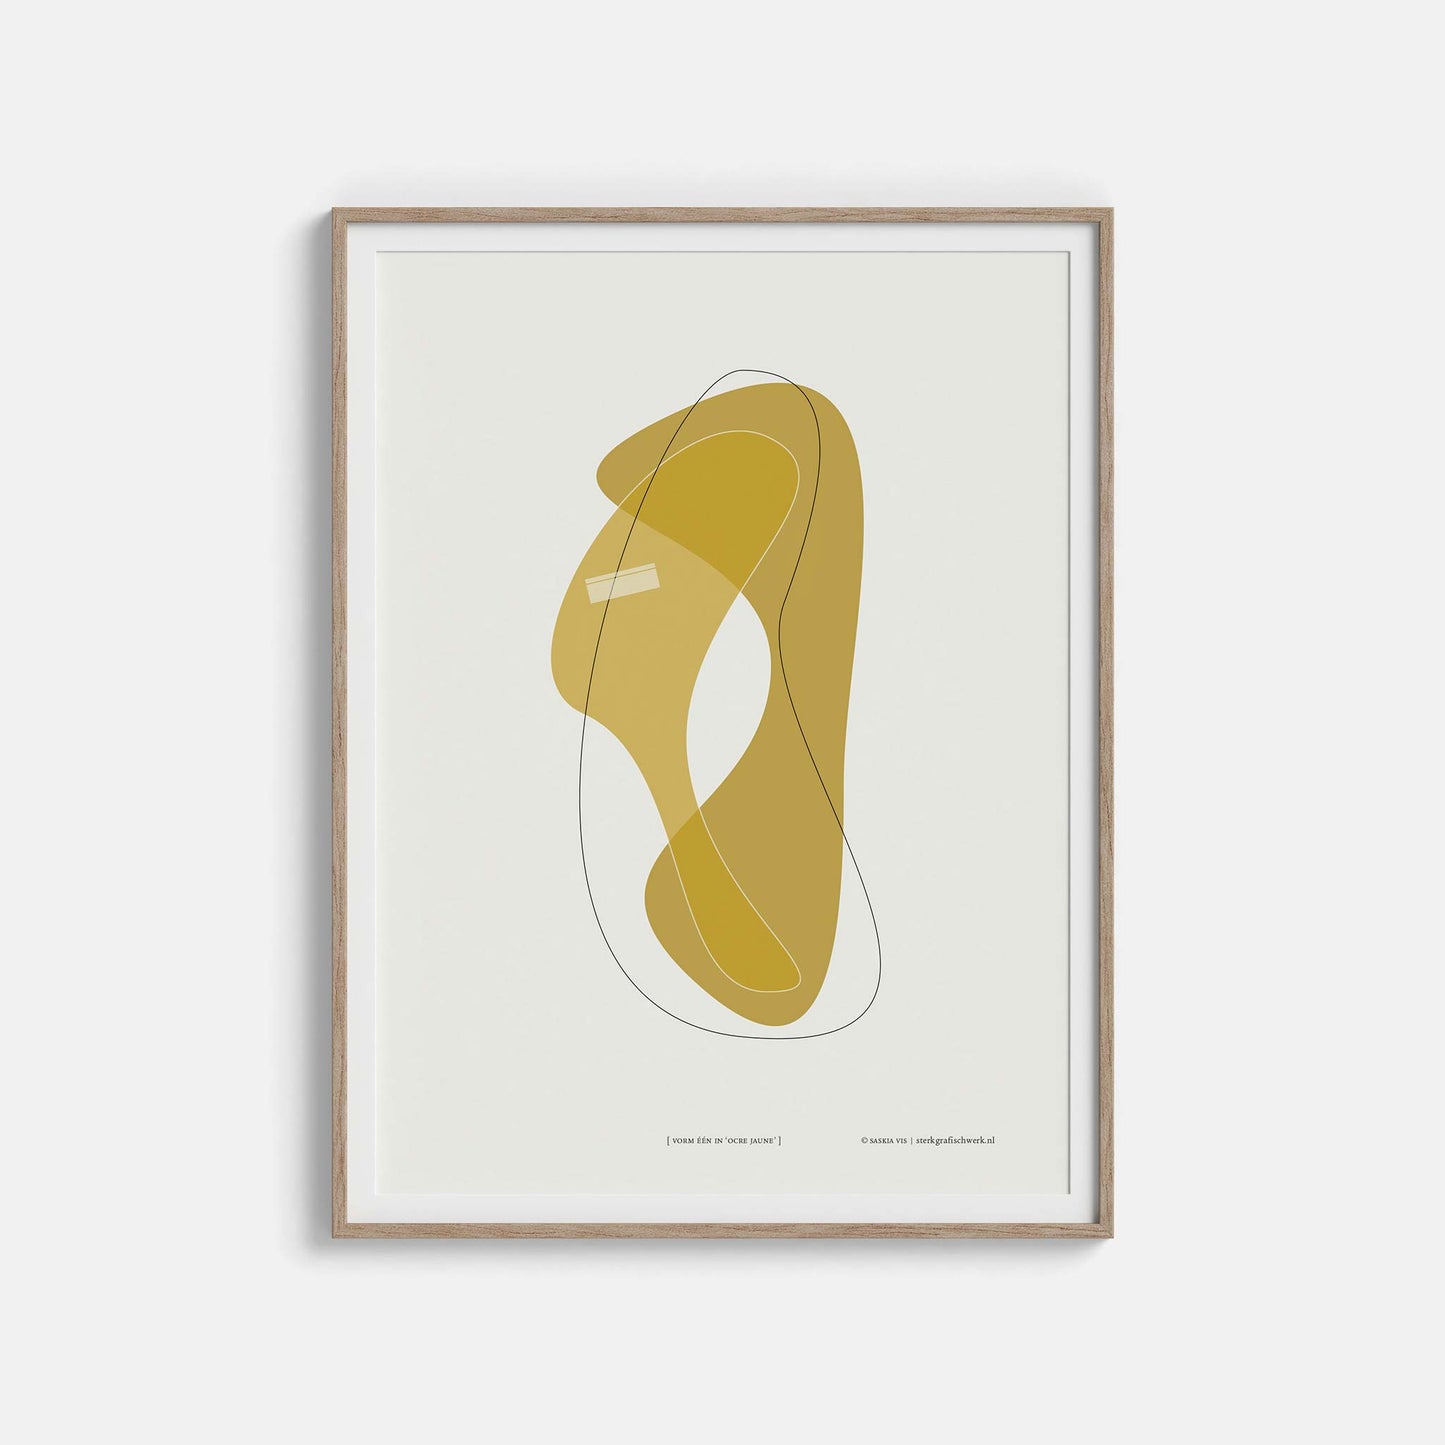 Productafbeelding poster "vorm één in ocre jaune" 3de impressie foto ingelijst hangend aan een witte wand